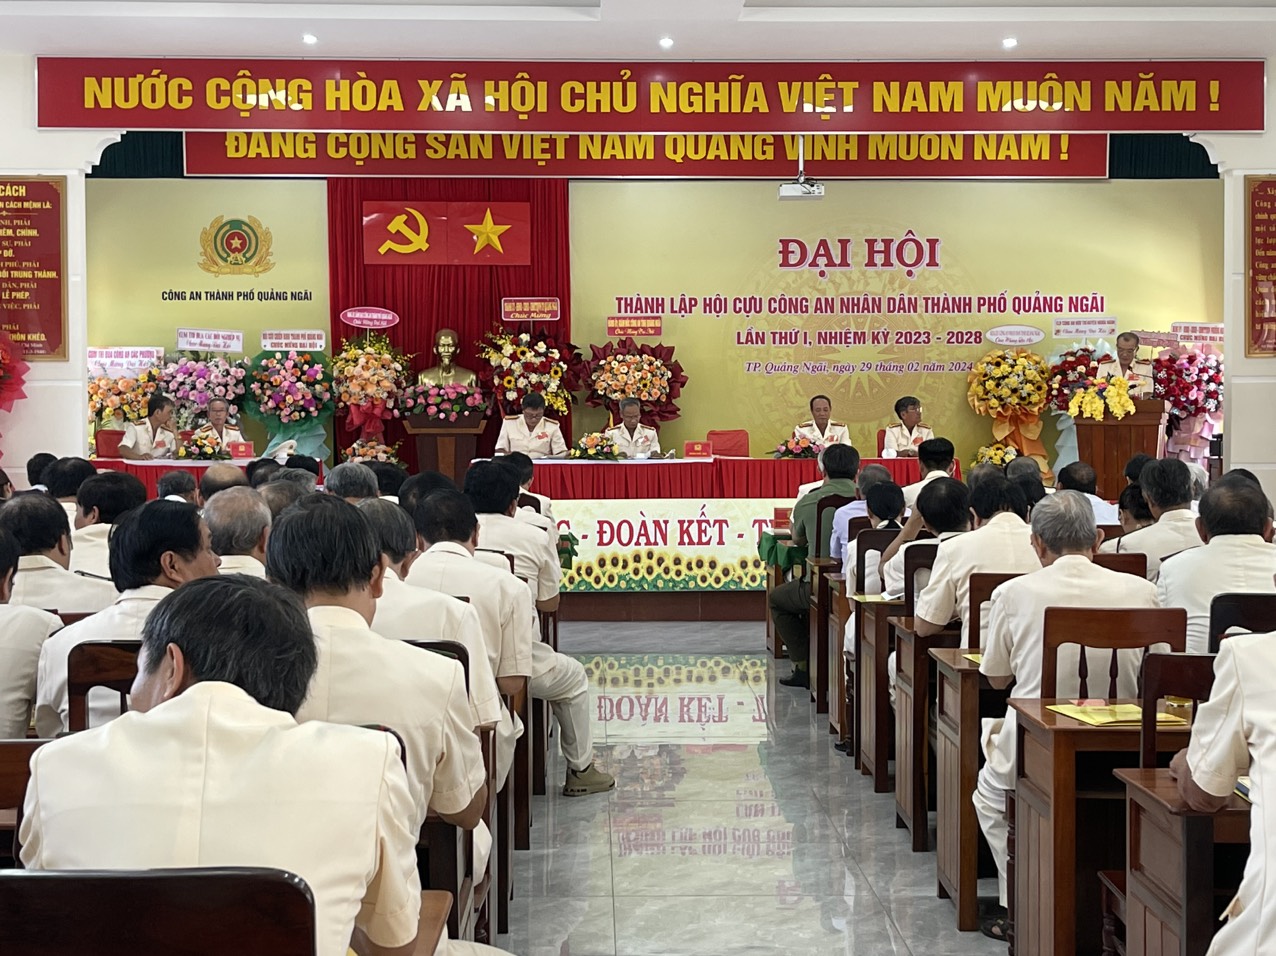 Đại hội Hội Cựu Công an nhân dân thành phố Quảng Ngãi lần thứ I